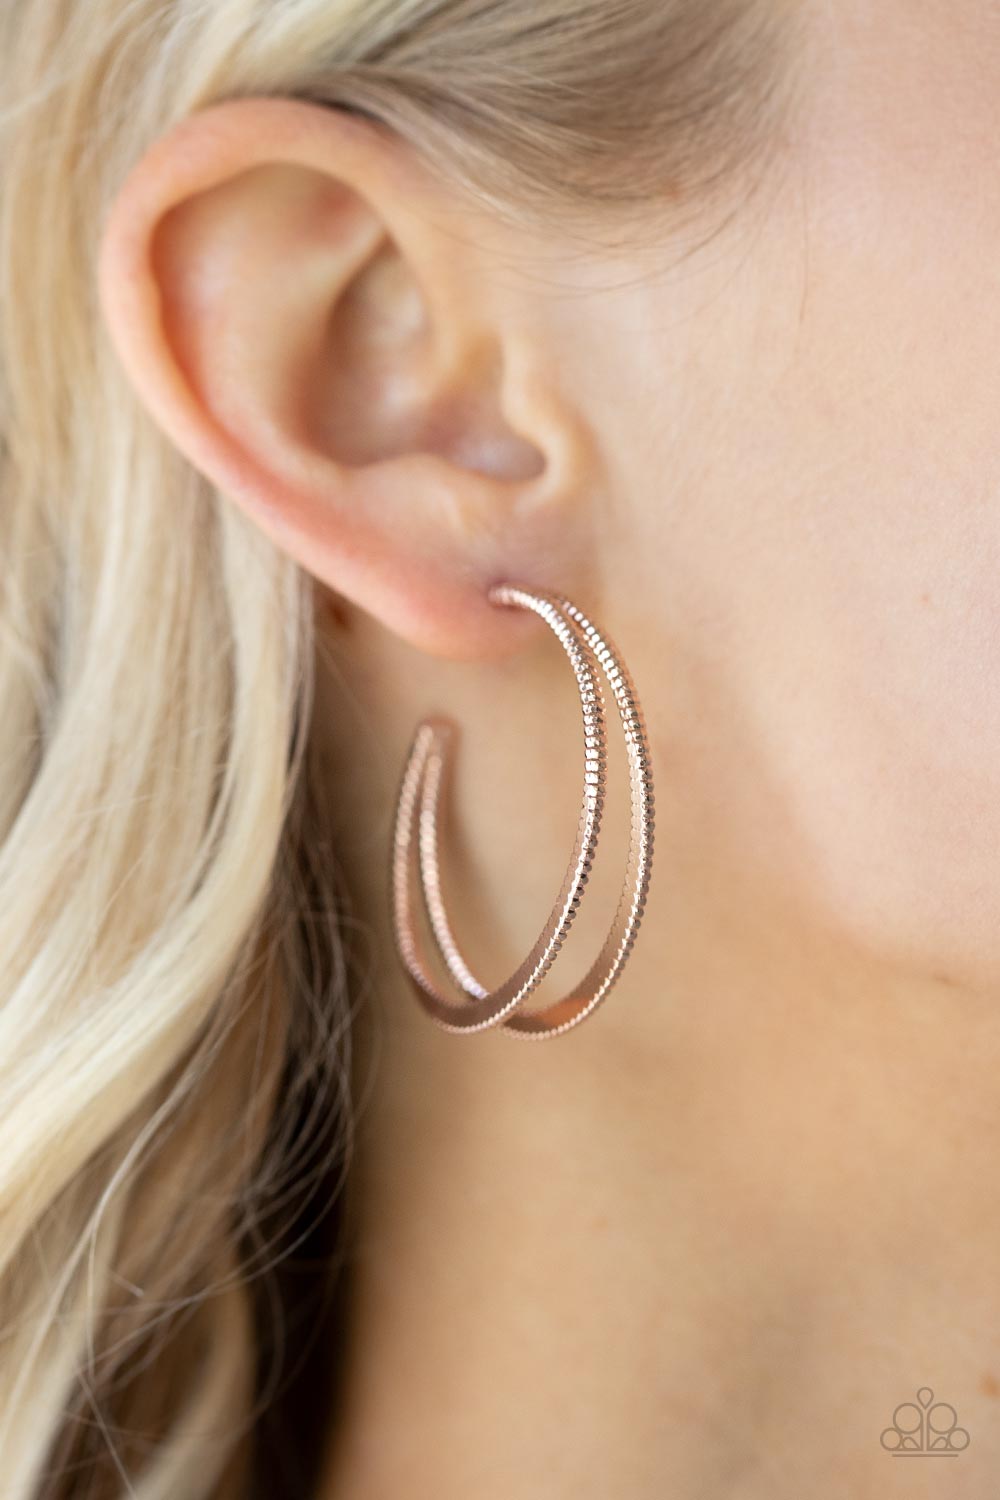 Rustic Curves - Rose Gold hoop earrings